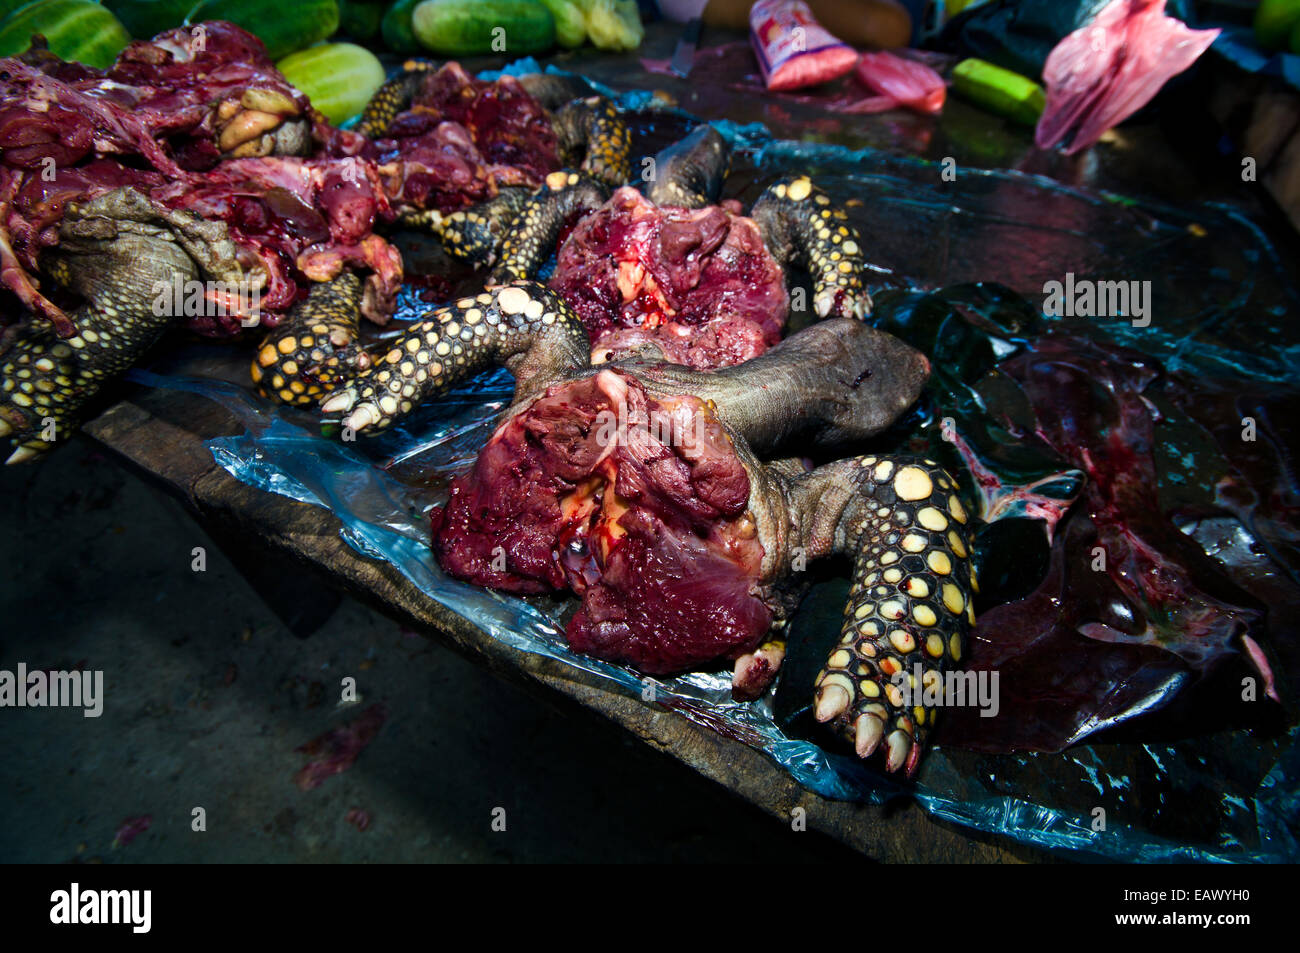 La tortue à pattes jaunes vulnérables massacrés pour l'alimentation dans un marché noir de l'Amazone. Banque D'Images